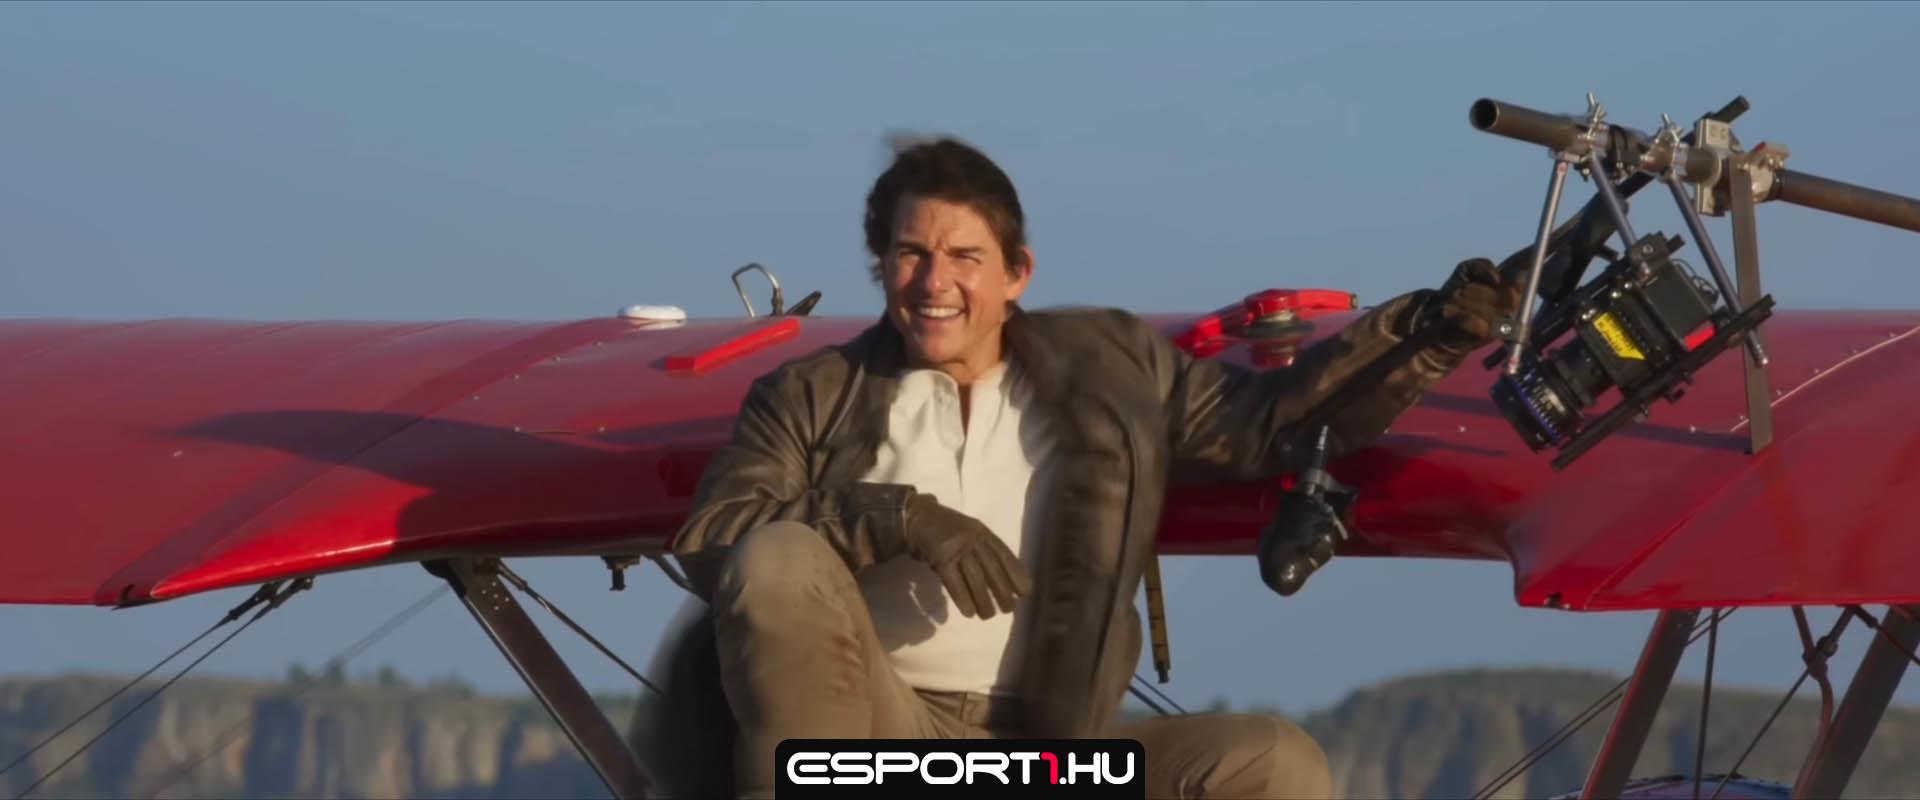 Mission Impossible 7: Ilyen őrült promócióra is csak Tom Cruise képes